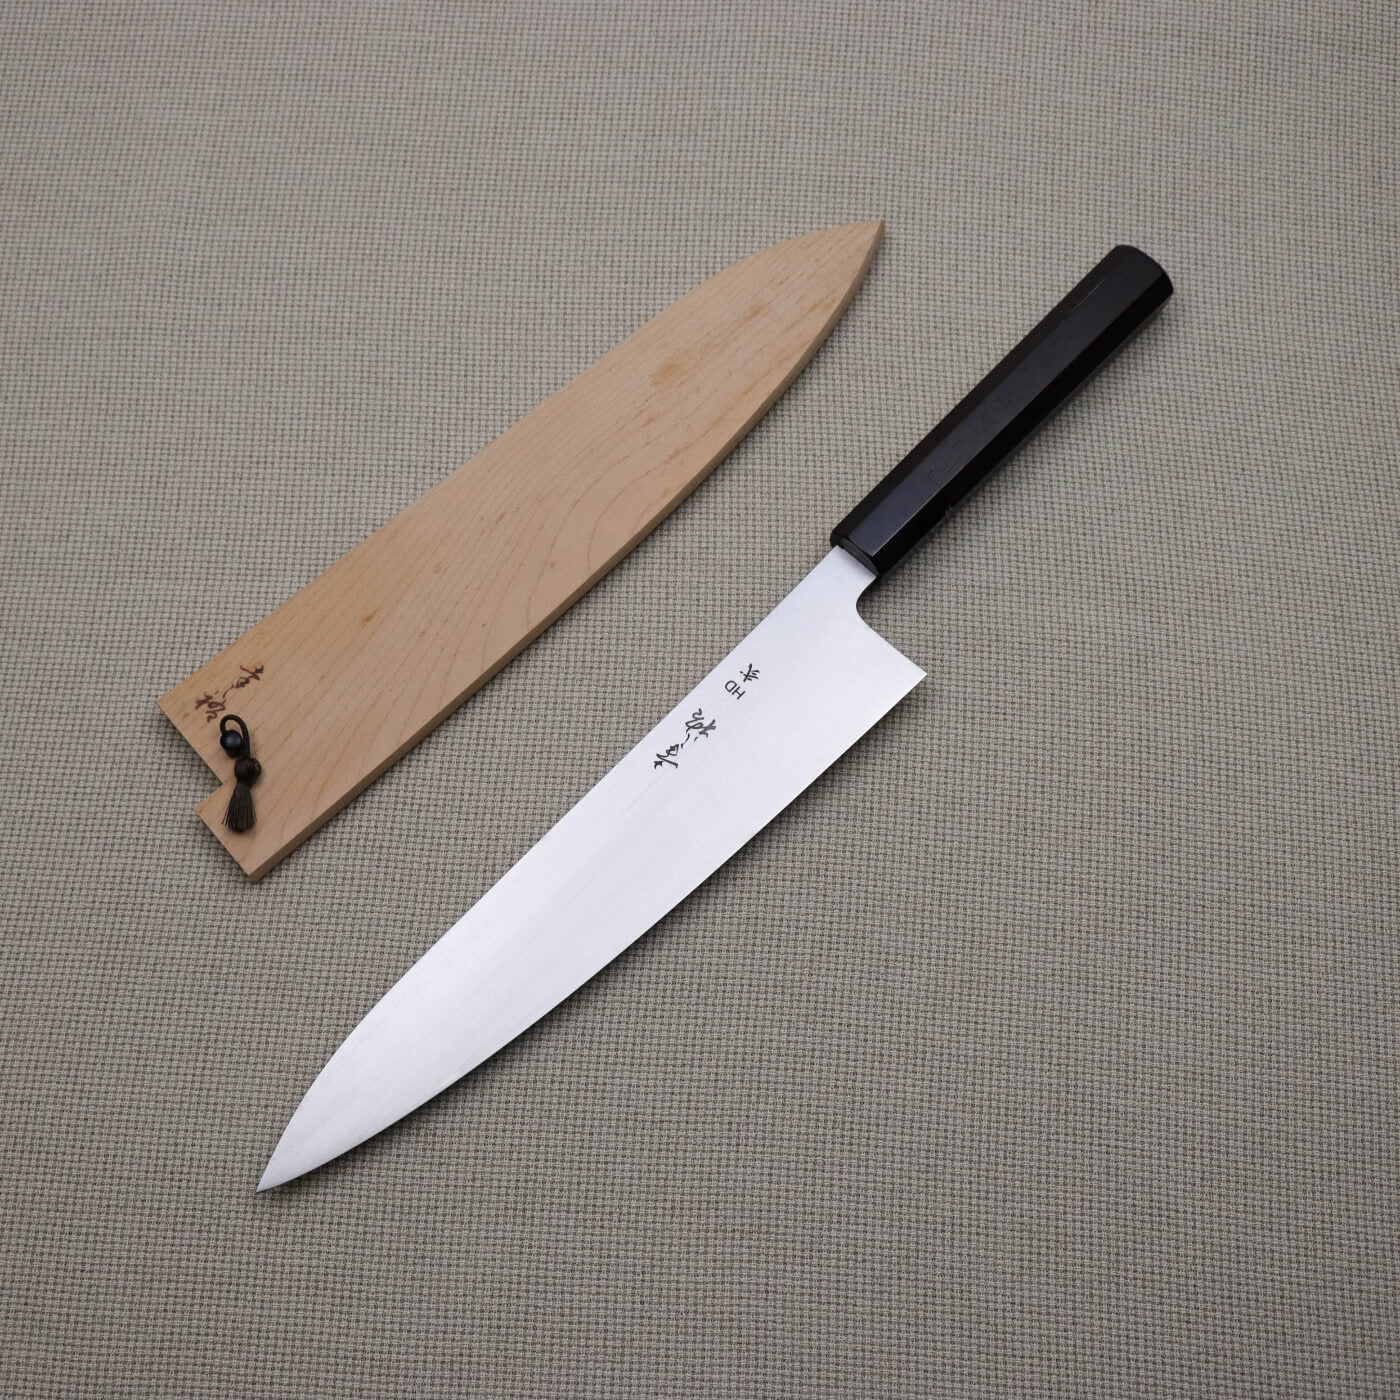 日本料理刀– yanpingknifesword